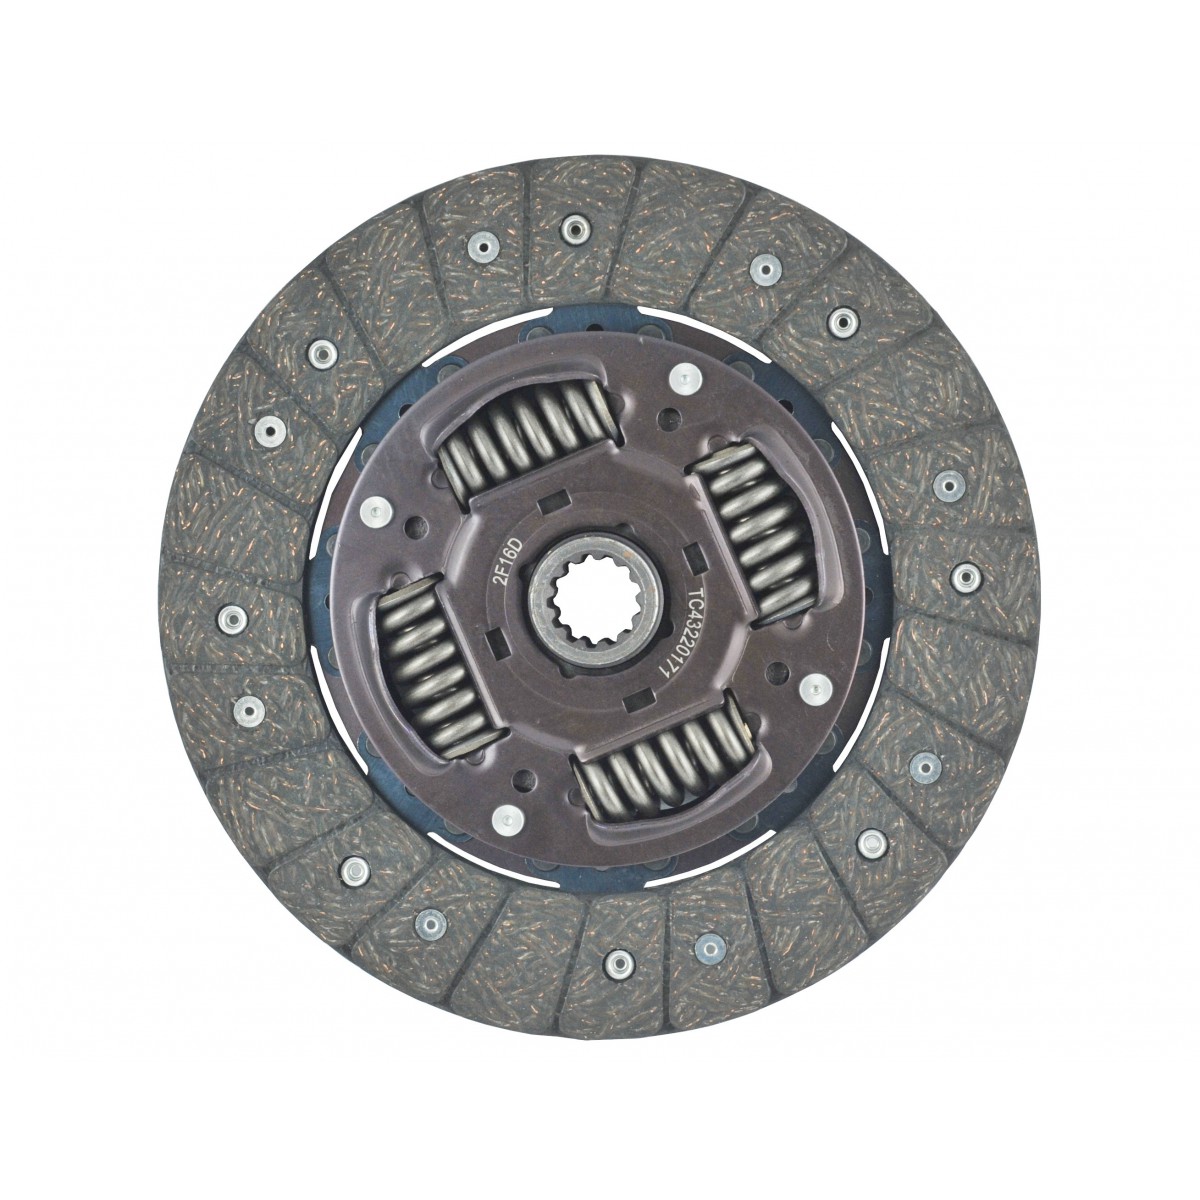 Clutch disc T1150-20176, 9 1/2 "x 13T Kubota L4508, L4708, L5018